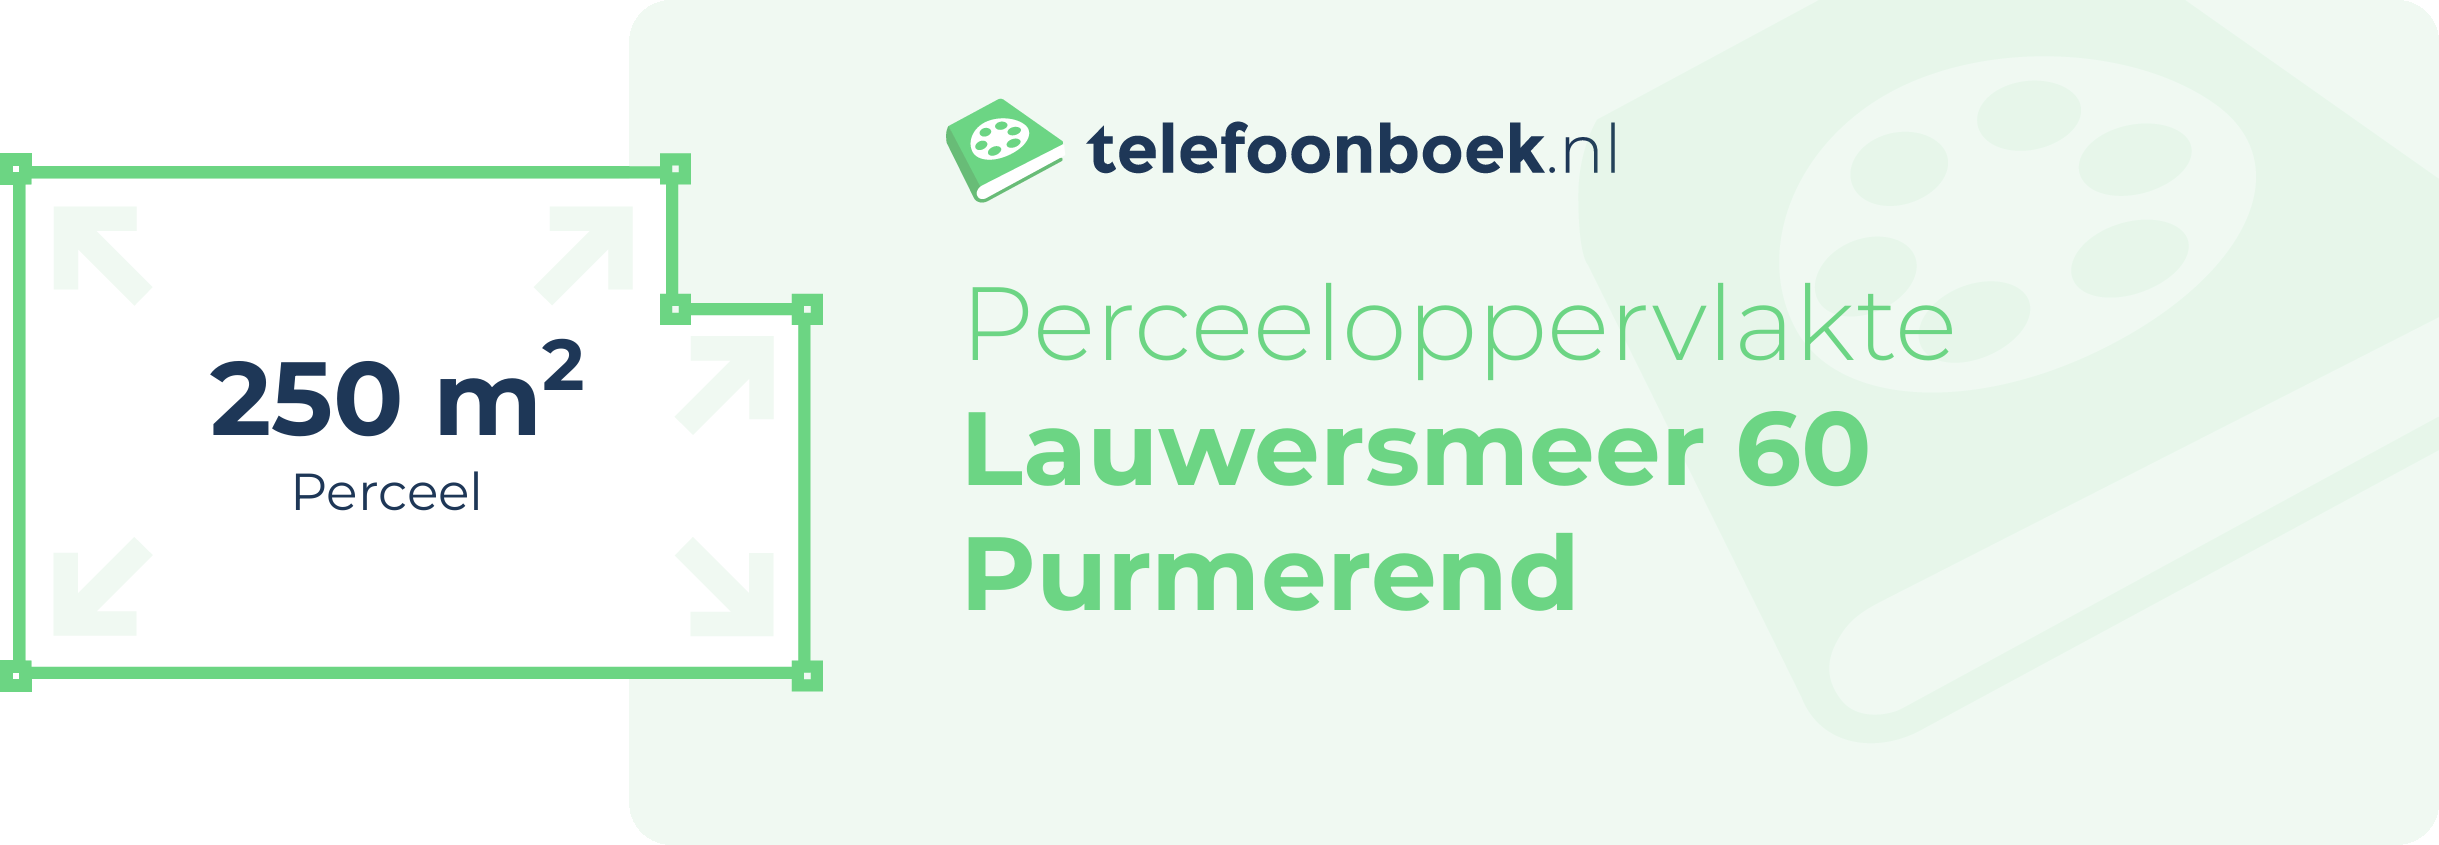 Perceeloppervlakte Lauwersmeer 60 Purmerend